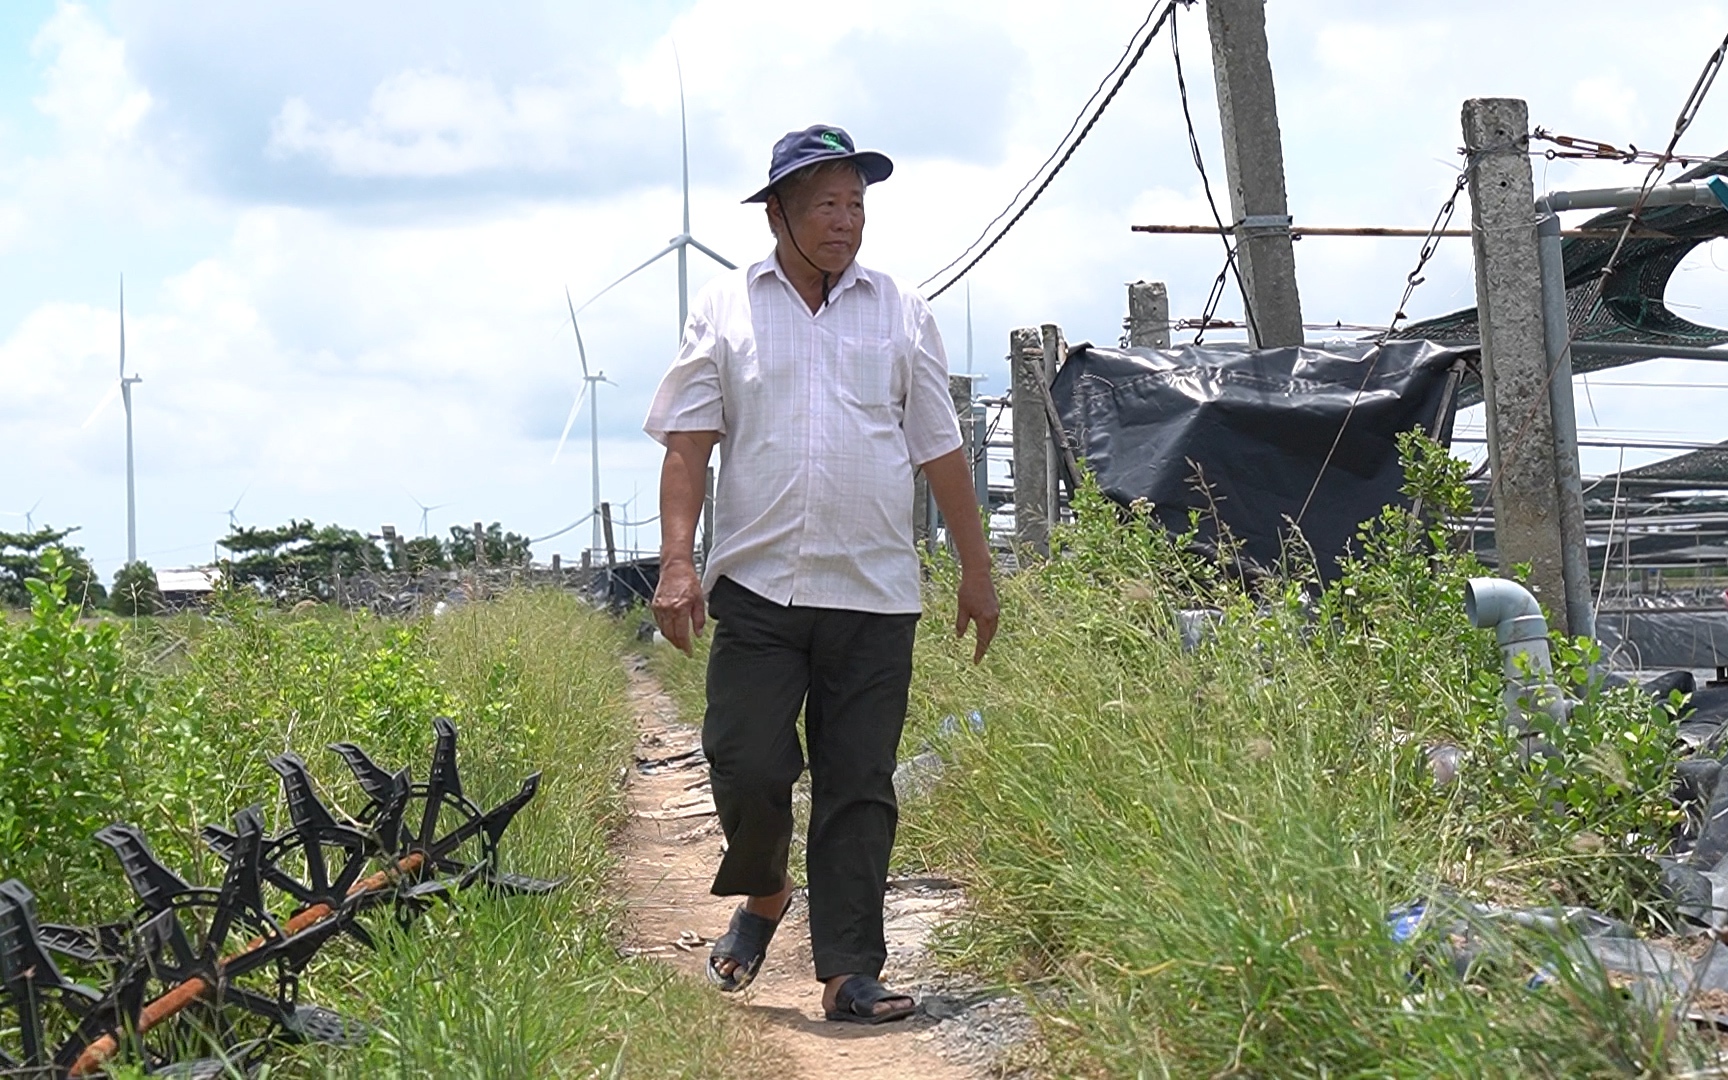 Nông dân SXKD giỏi toàn quốc lần thứ VI: Tăng Văn Xúa, người nông dân miệt vườn với những đóng góp xã hội to lớn